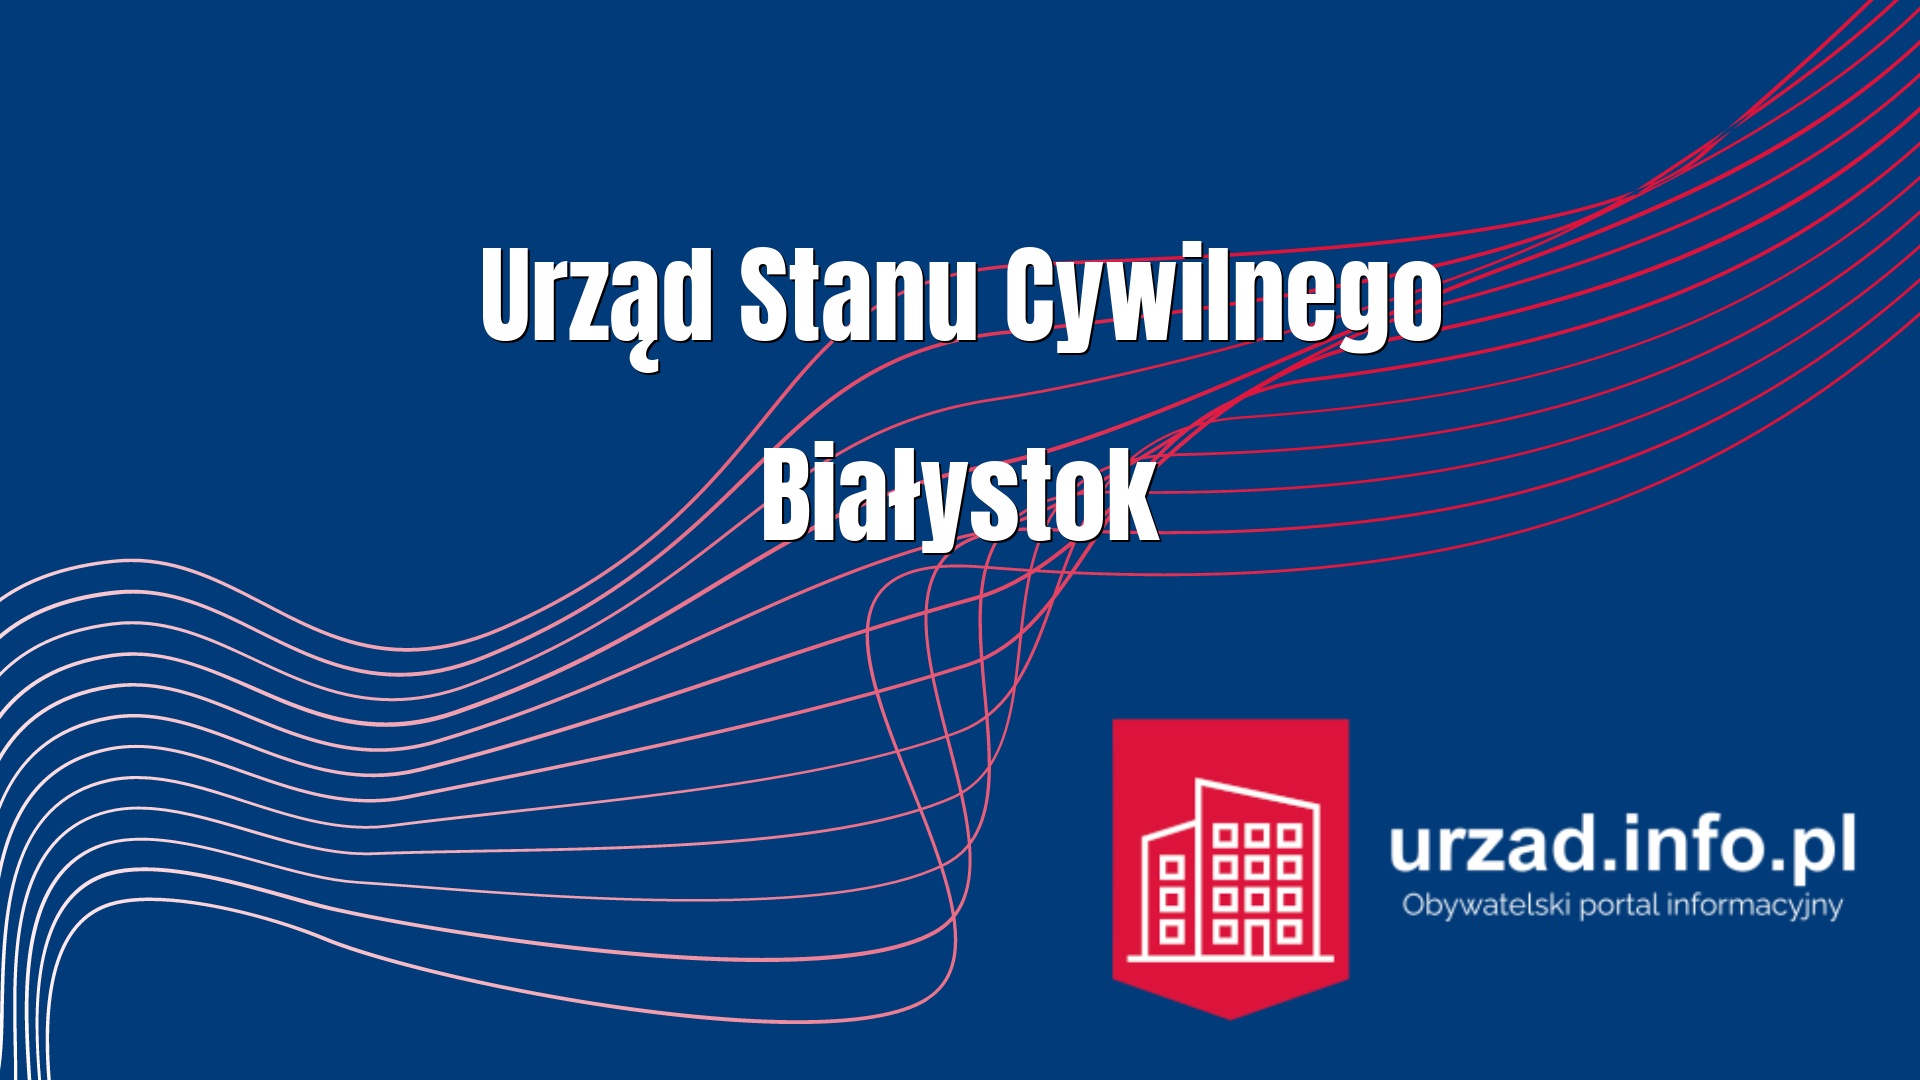 Urząd Stanu Cywilnego Białystok